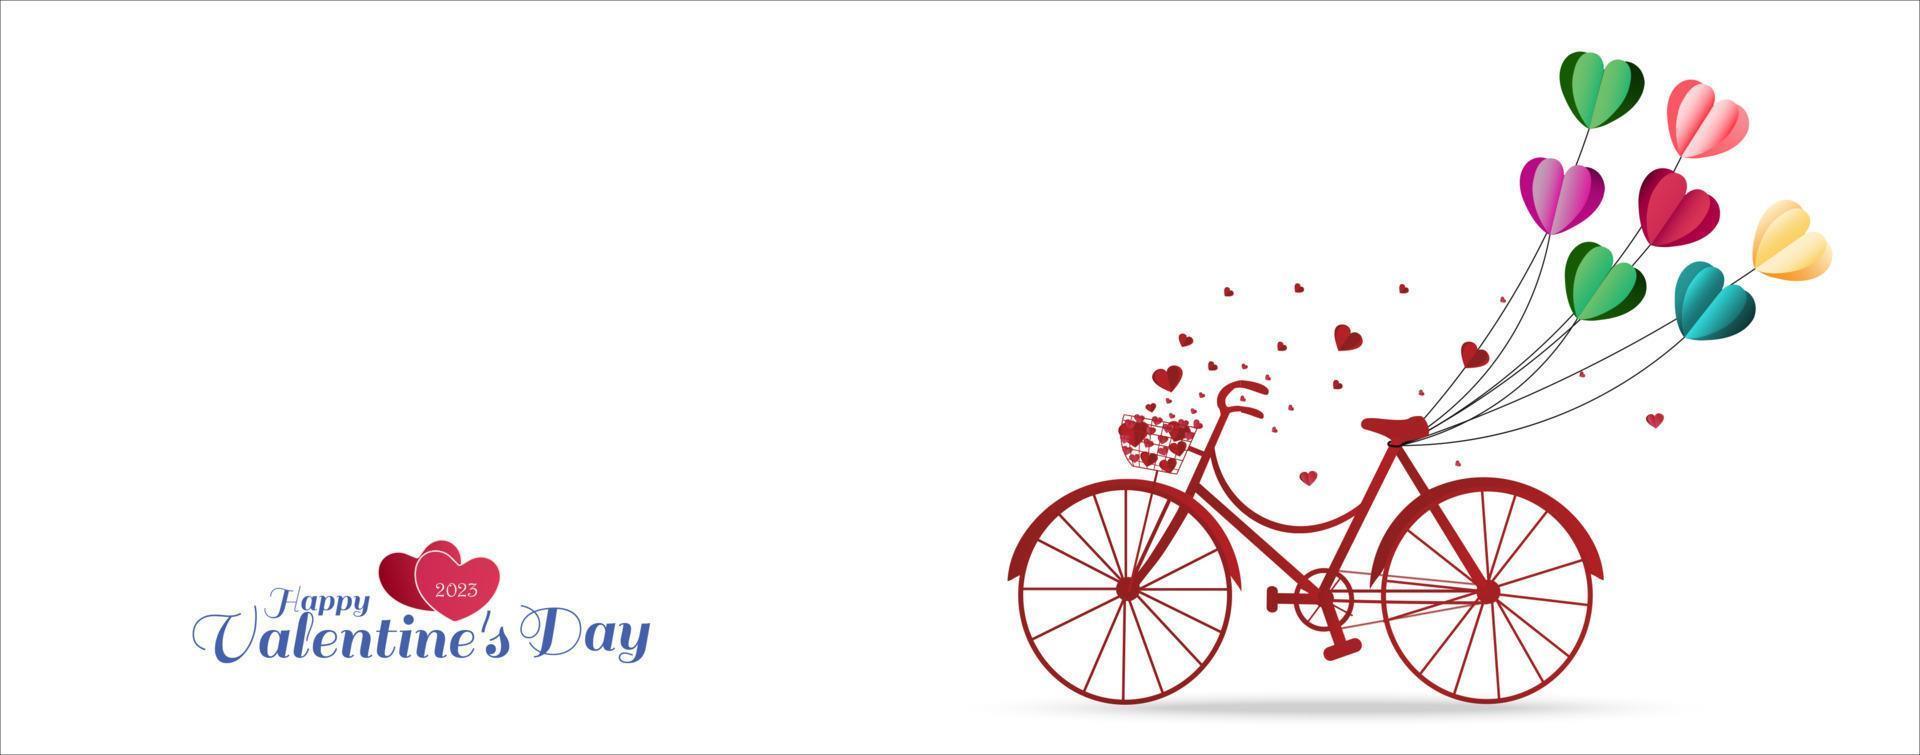 Valentijnsdag dag groet kaart met hart vormig ballonnen gebonden Aan een rood fiets. vector illustratie